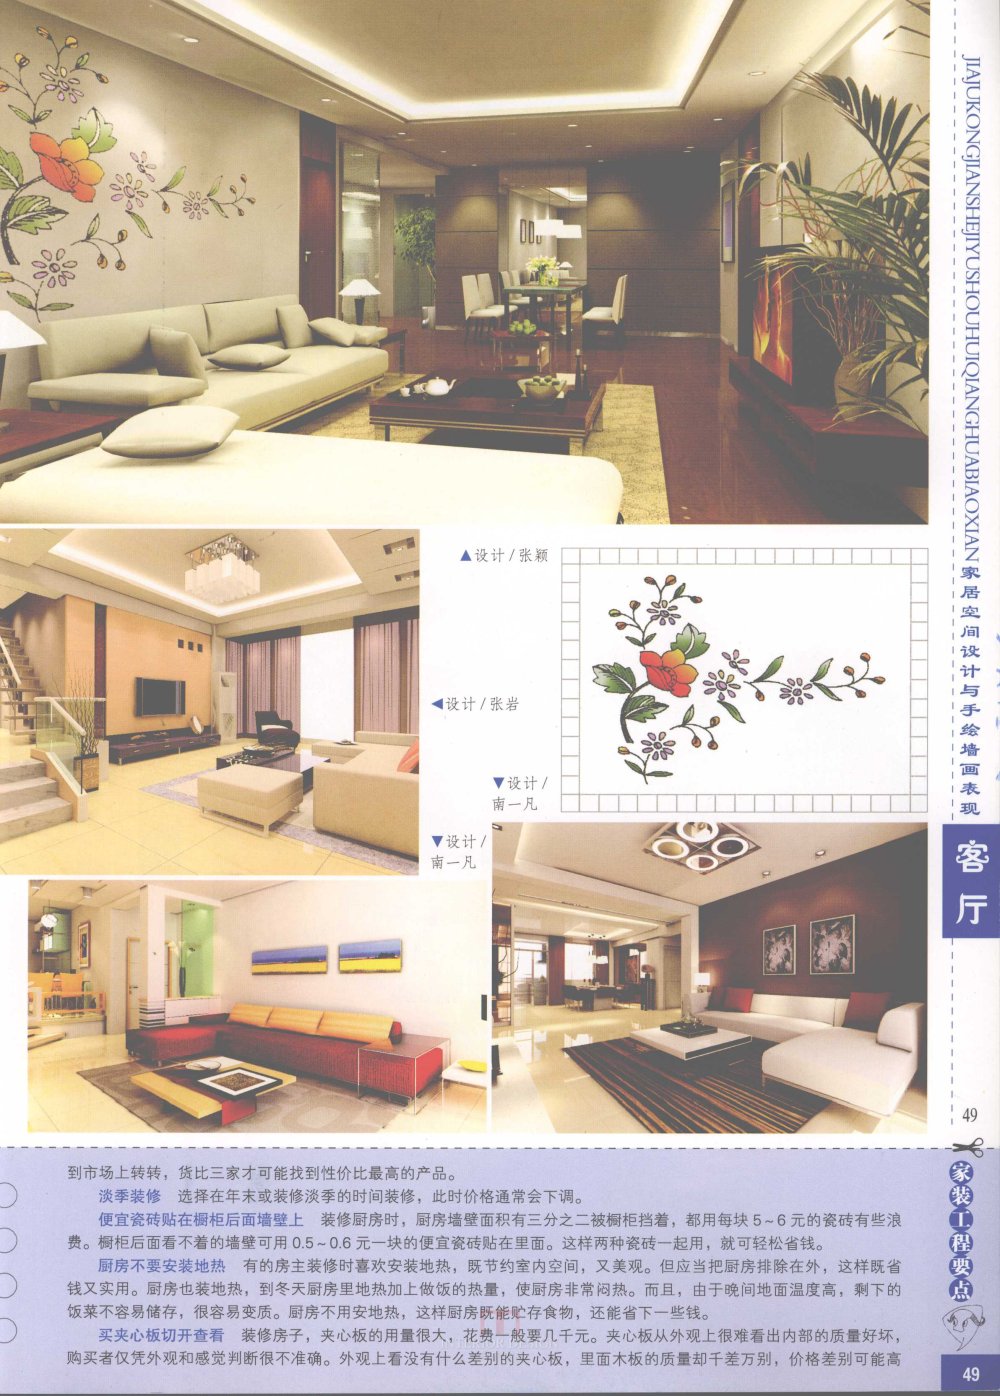 家居空间设计与手绘墙画表现客厅_家居空间设计与手绘墙画表现客厅-51.jpg